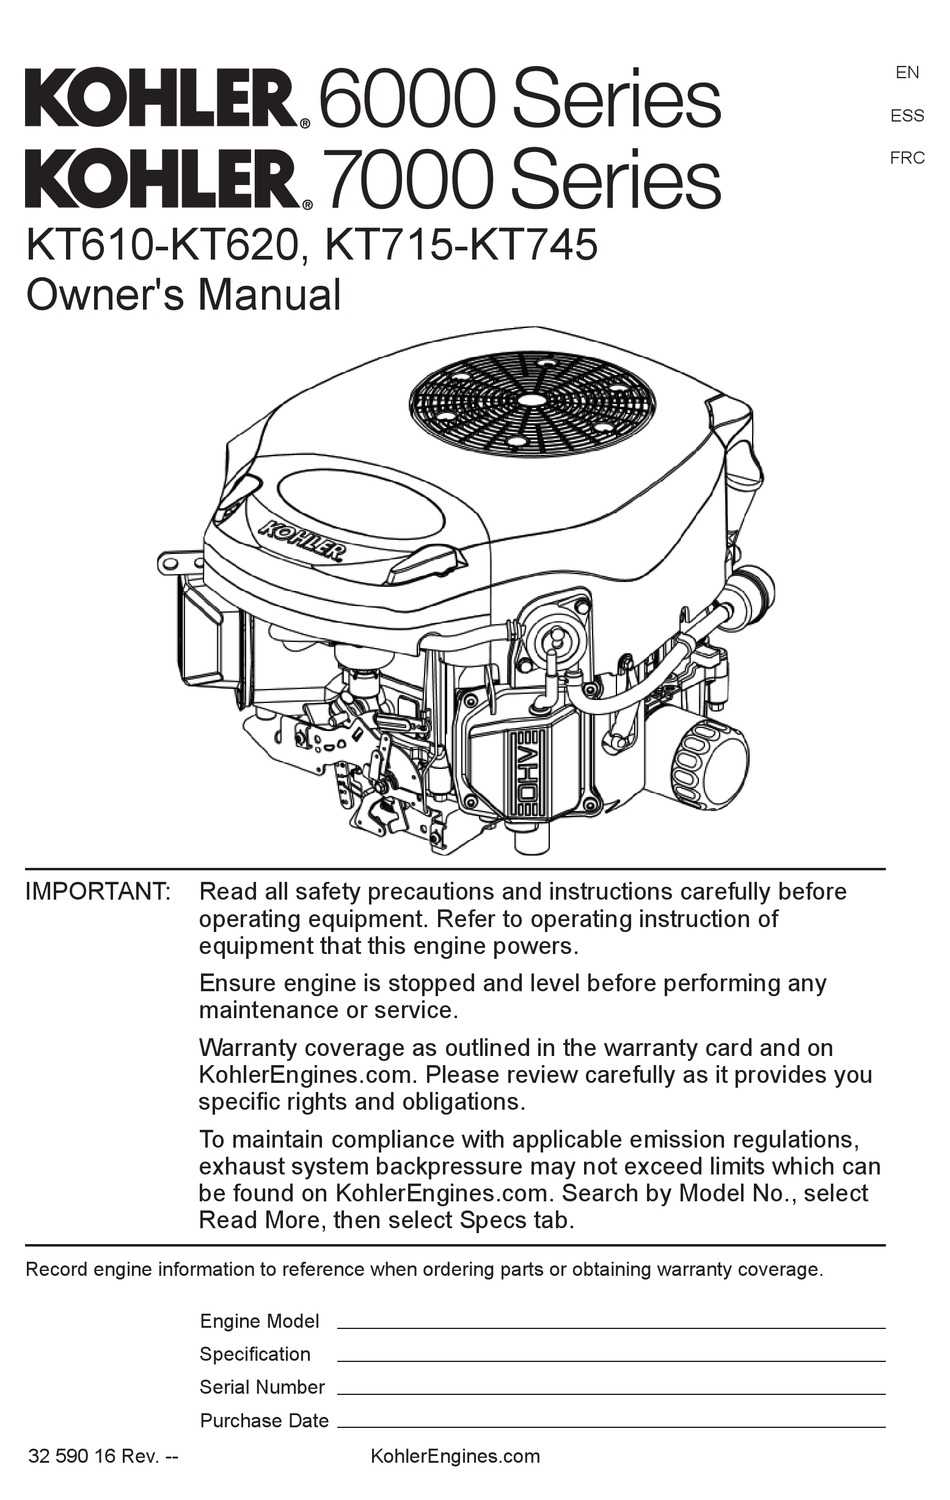 KOHLER KT610 OWNER'S MANUAL Pdf Download ManualsLib